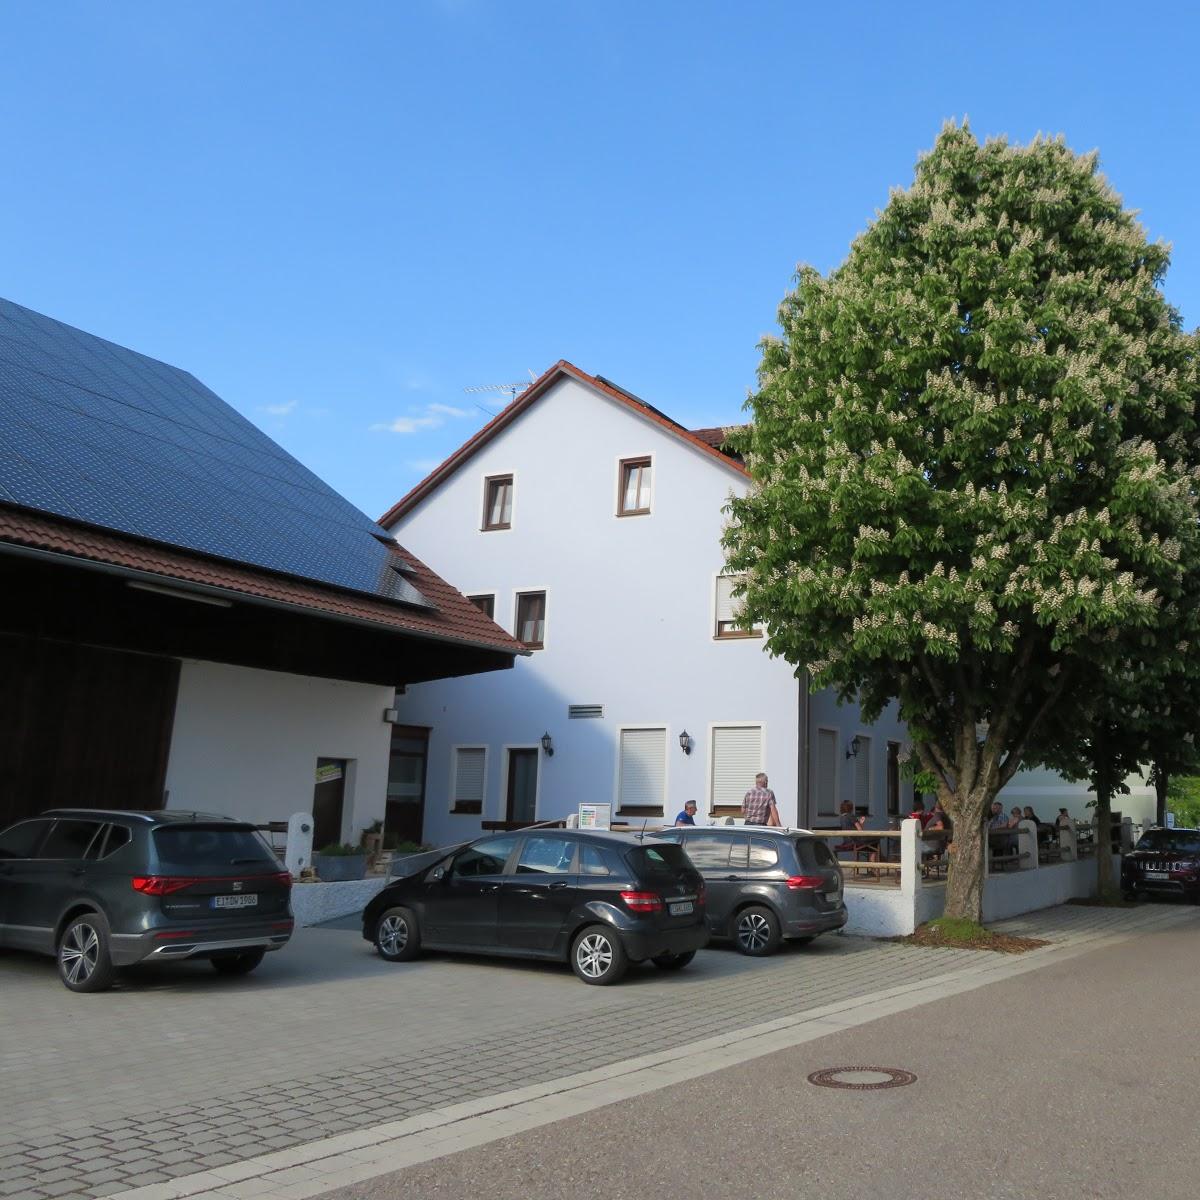 Restaurant "Gasthaus zum Löwen" in  Pollenfeld